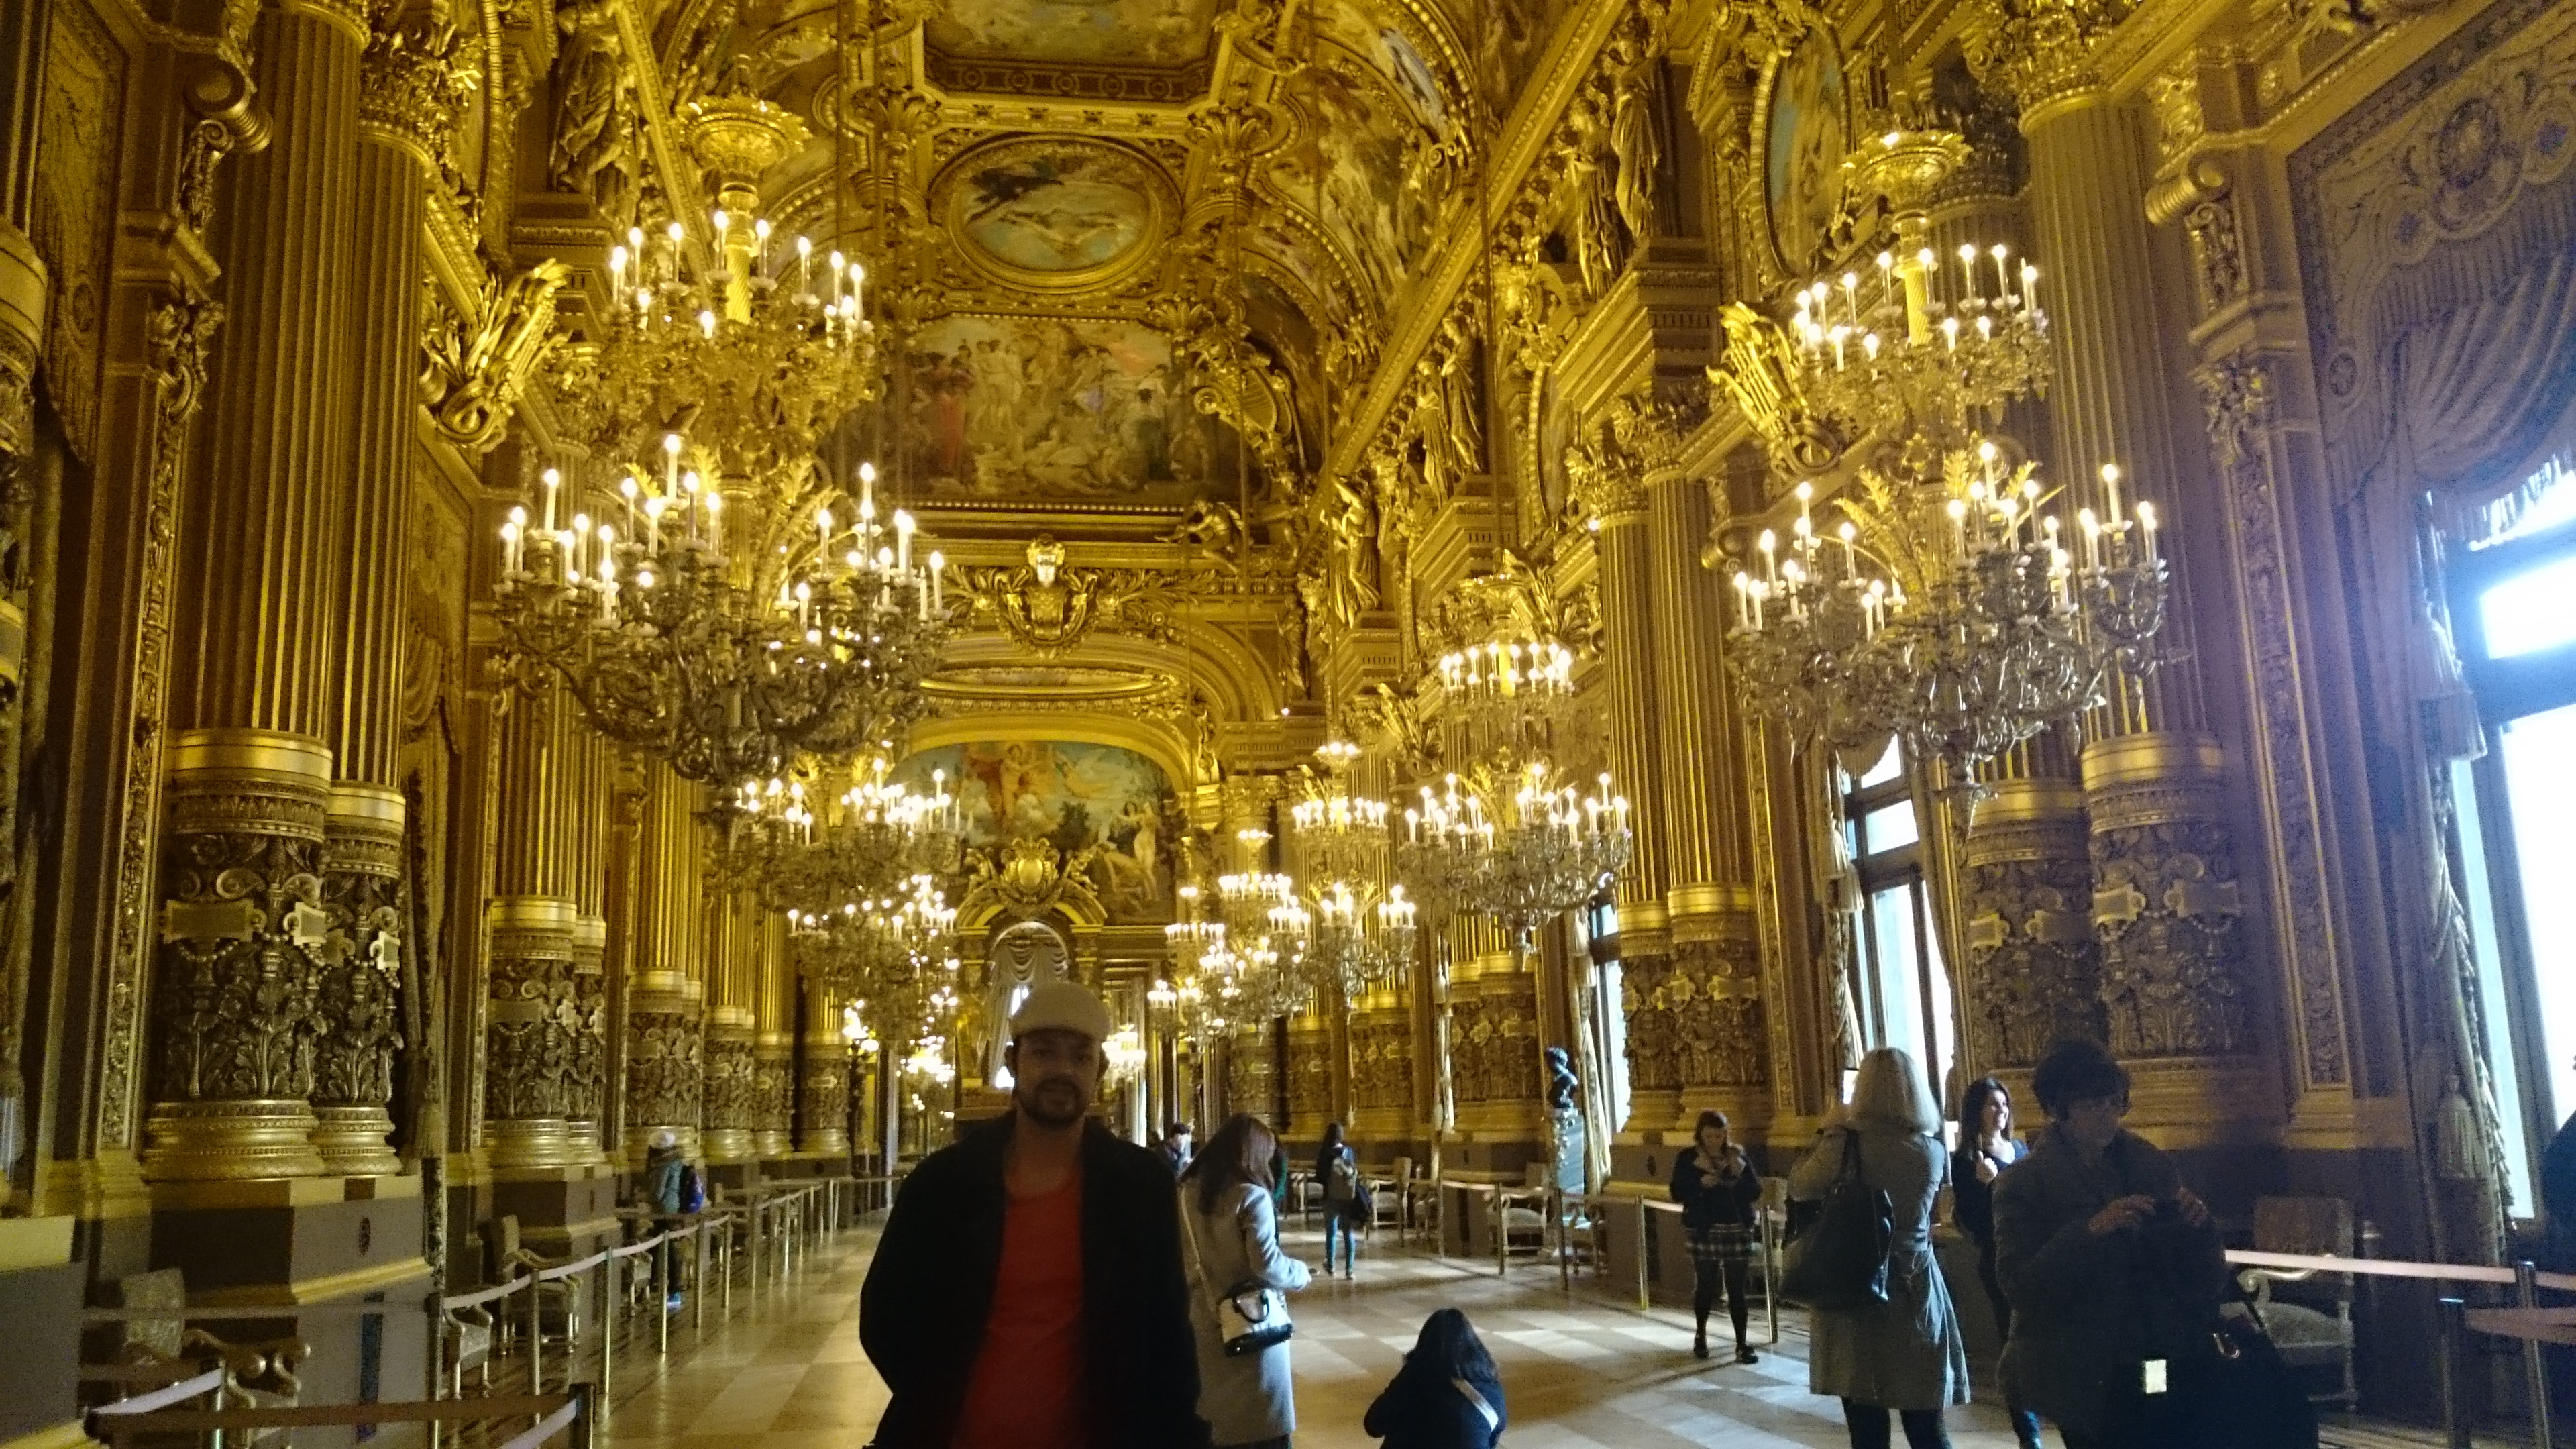 dsc 1047 - Una visita a la Opera de Paris (Palais Garnier)